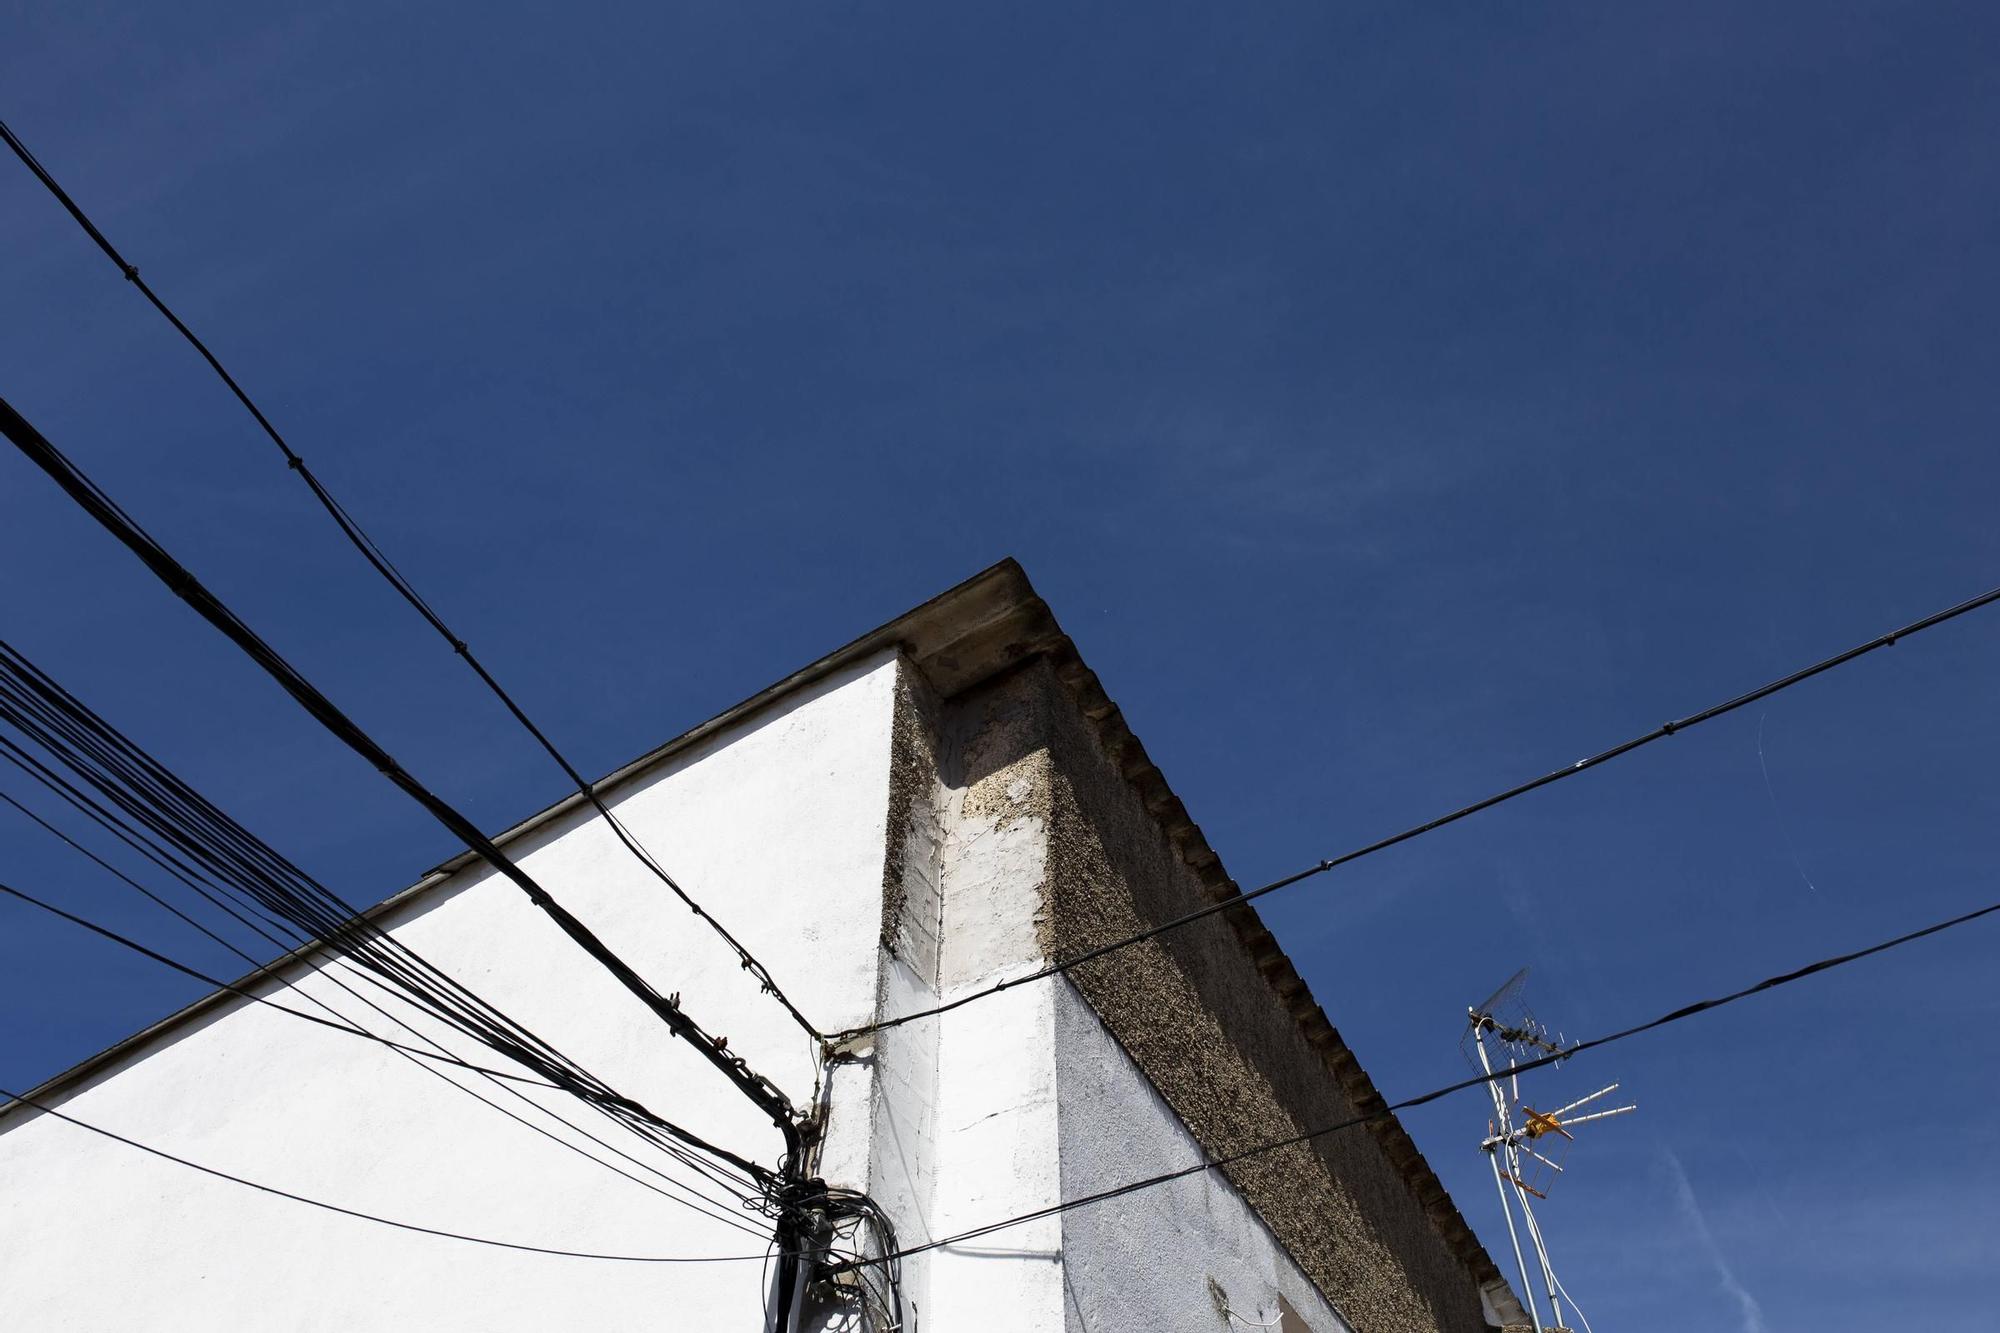 Así se encuentran vecinos de las 300 en Cáceres: encarcelados en su propia casa por un enjambre de cables